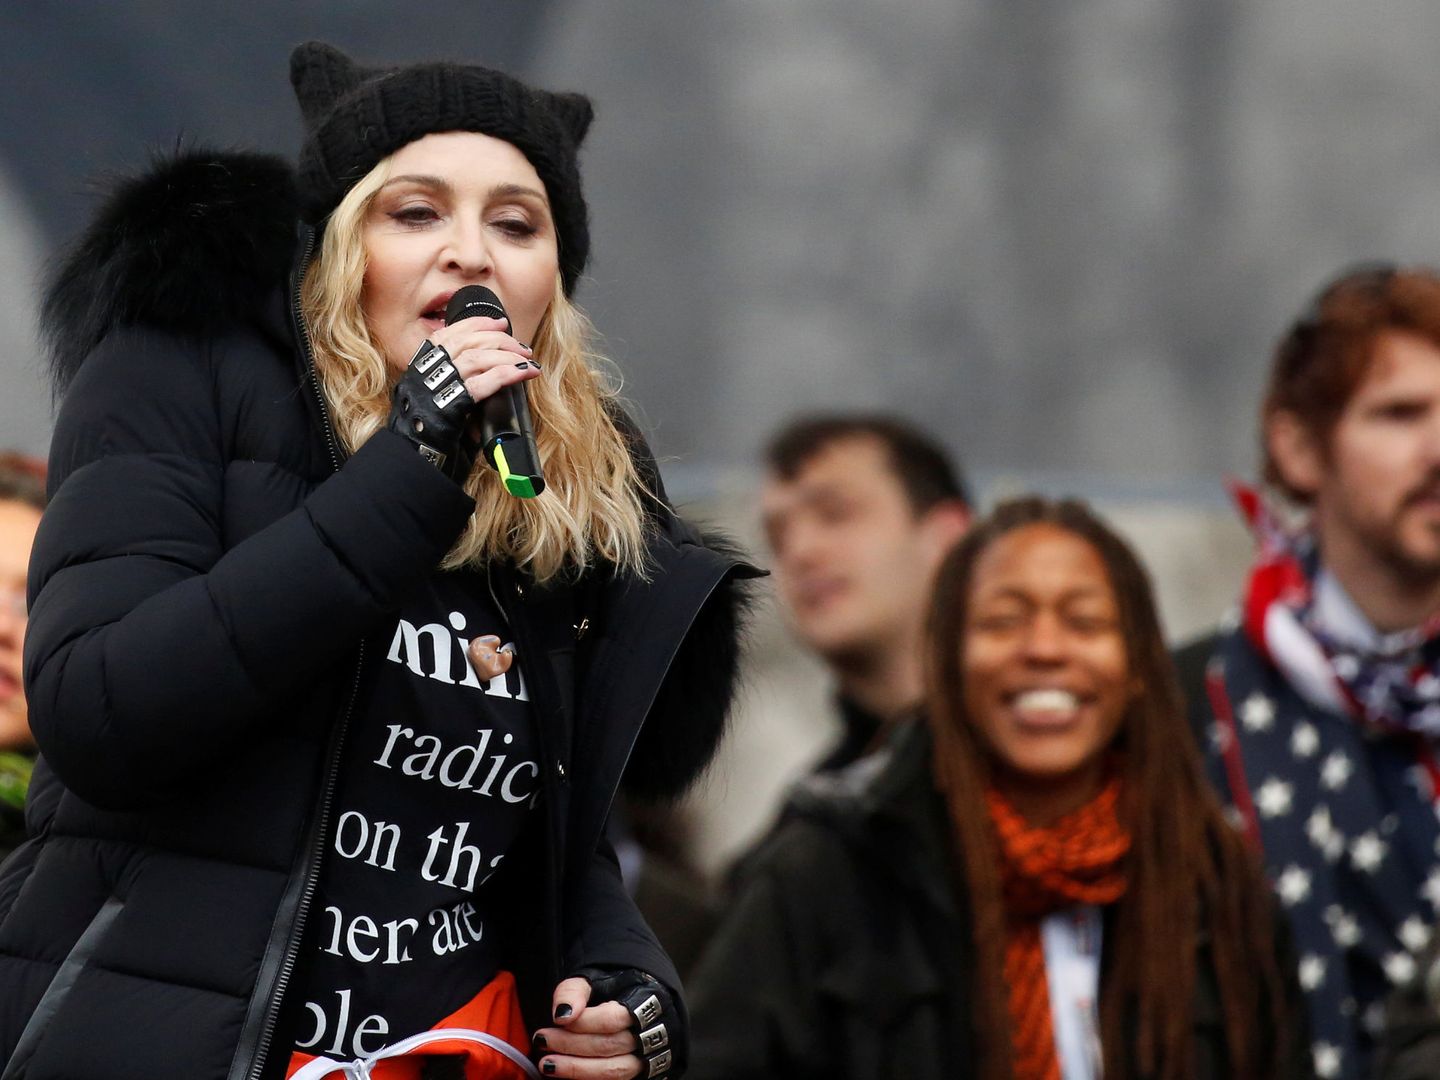 La cantante Madonna ofreció también un discurso en la marcha. (Reuters)